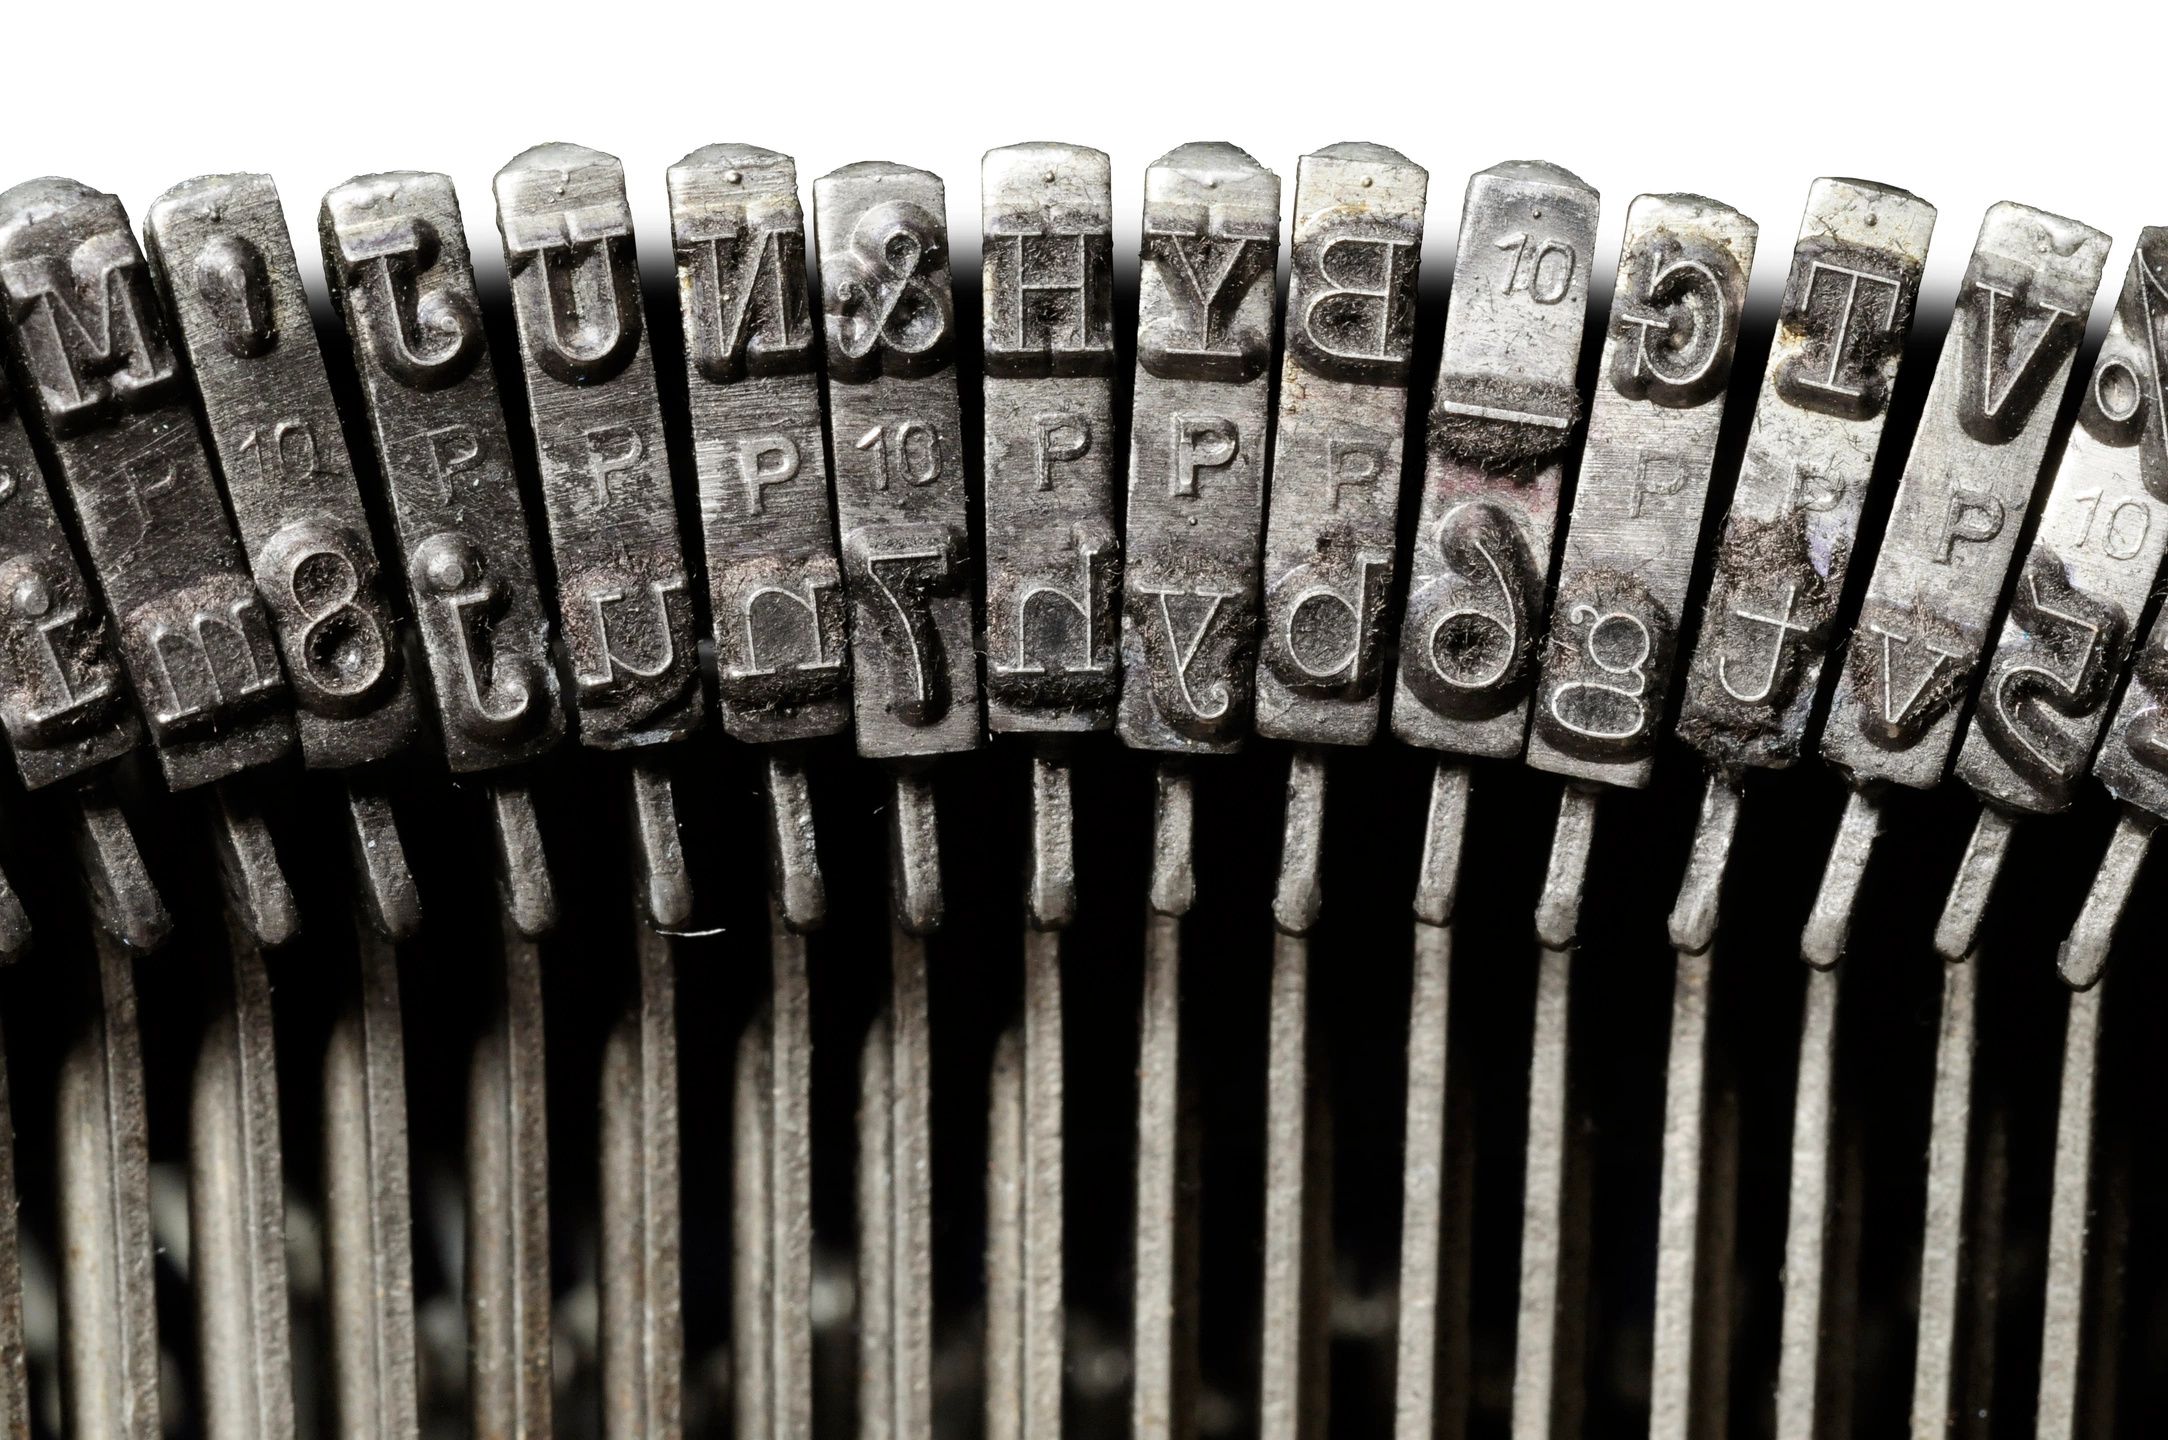 old-typewriter-keys